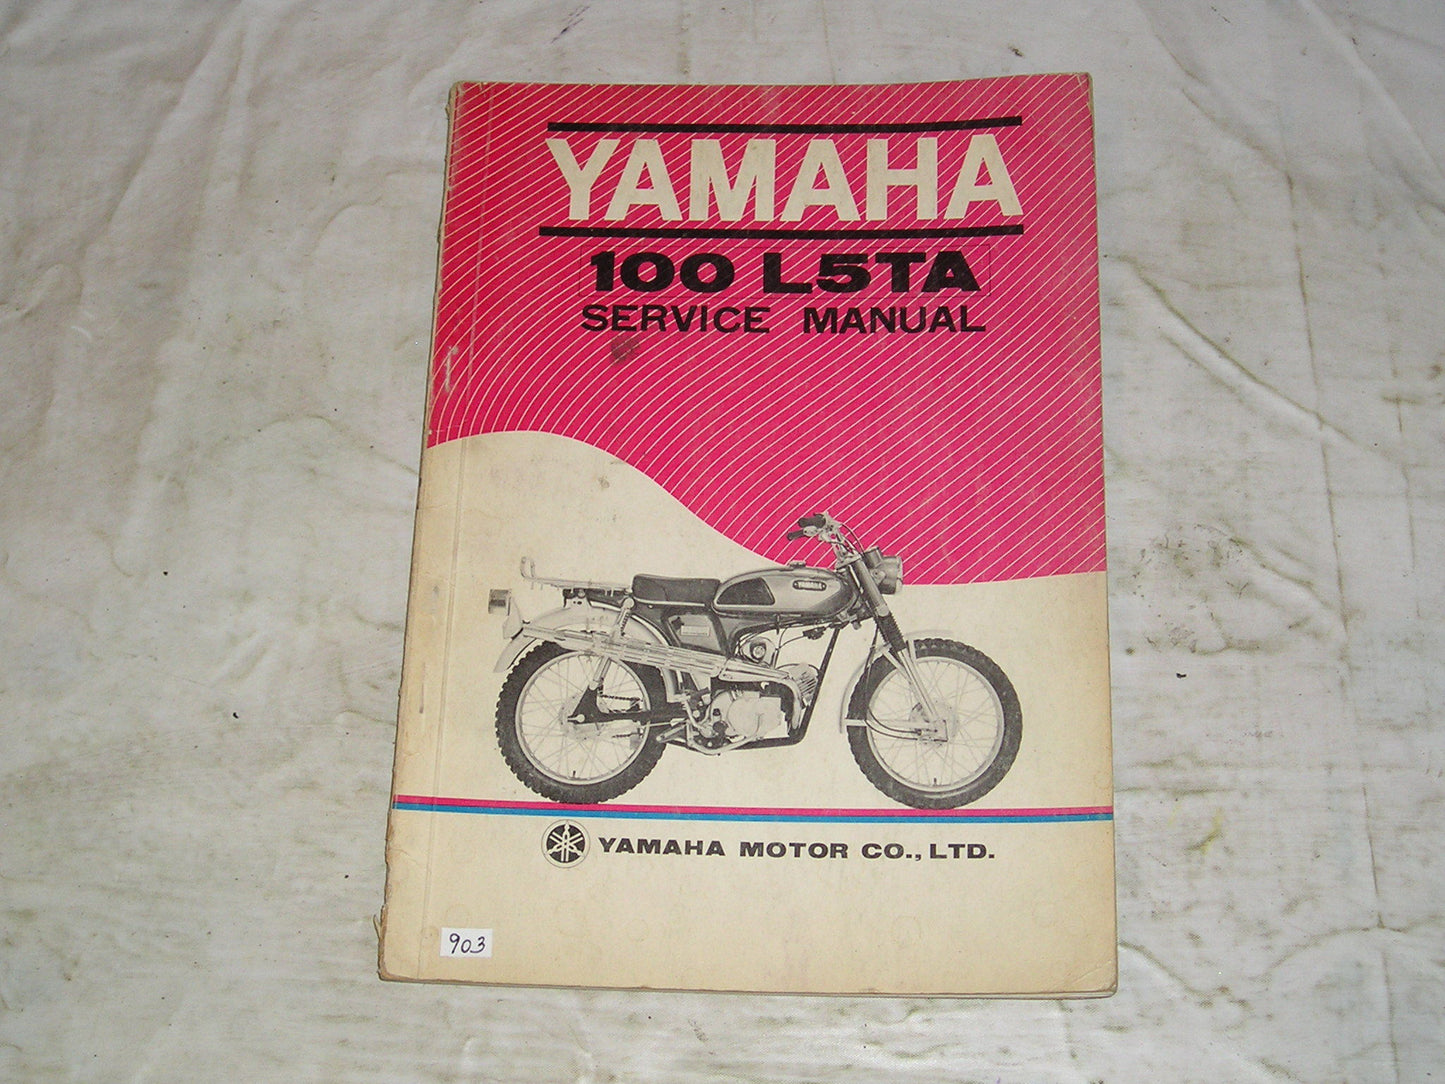 YAMAHA 100 Trailmaster  L5T A  L5TA  1970  Service Manual  #903